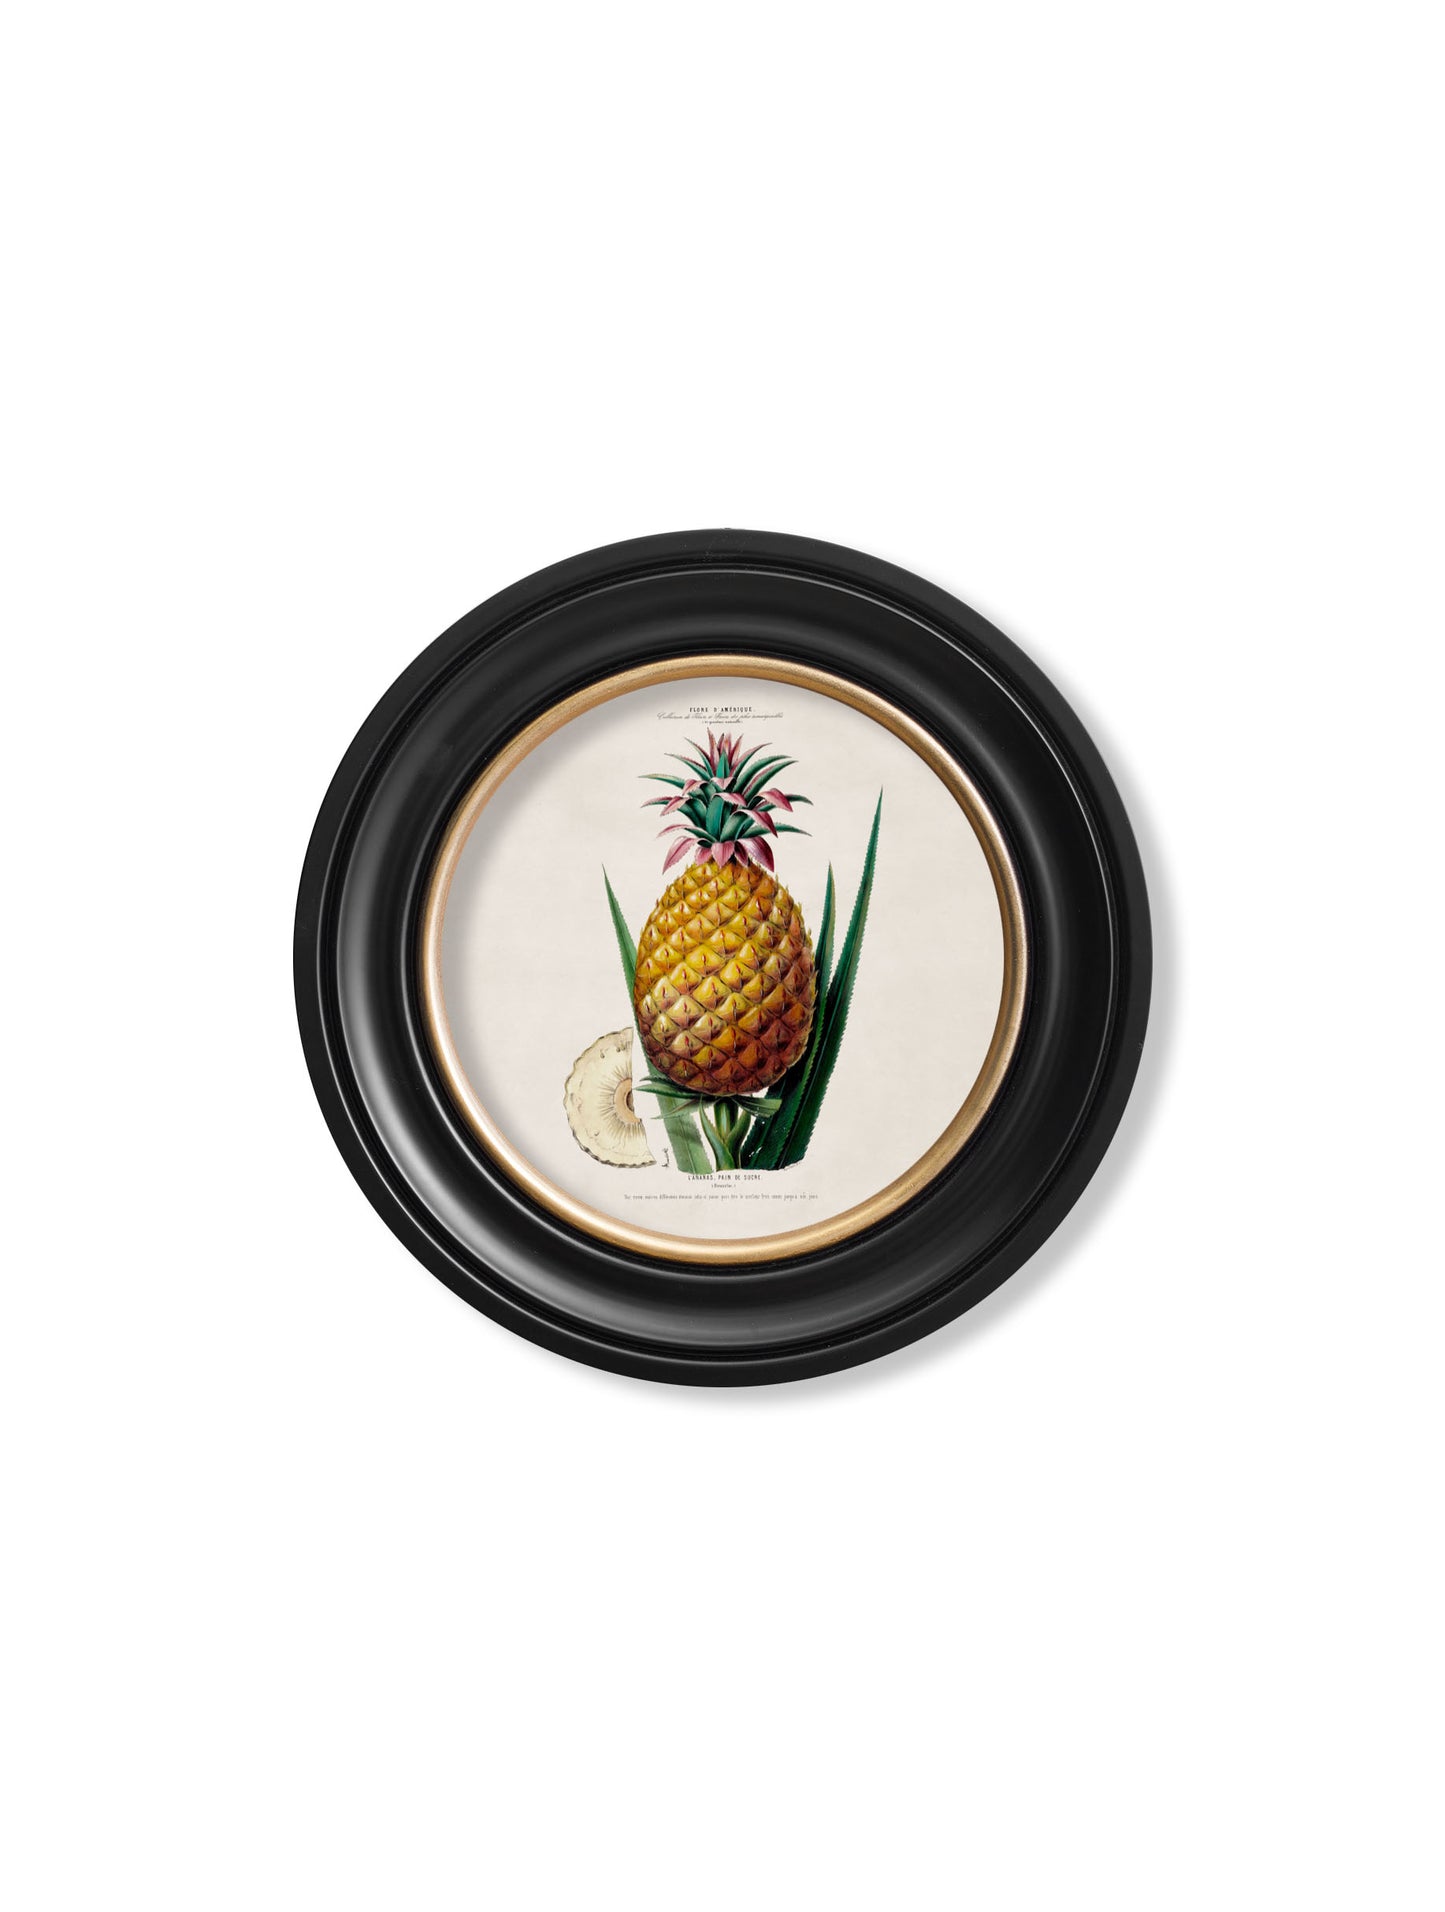 Round Framed Pineapple Print